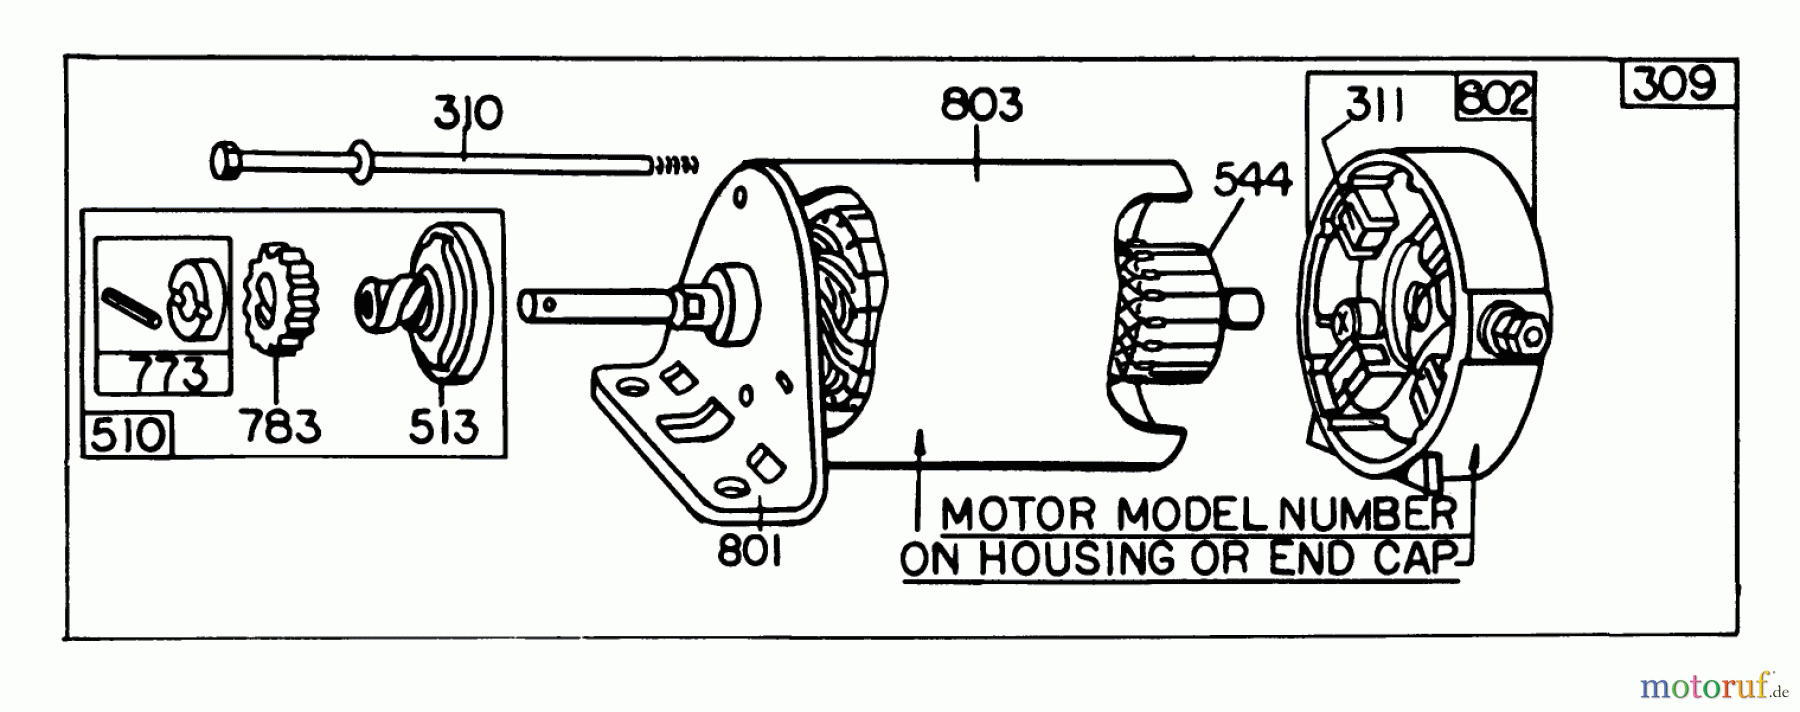  Toro Neu Mowers, Lawn & Garden Tractor Seite 1 57356 (11-42) - Toro 11-42 Lawn Tractor, 1978 (8000001-8999999) BRIGGS & STRATTON MODEL 252707-0146-01 #2